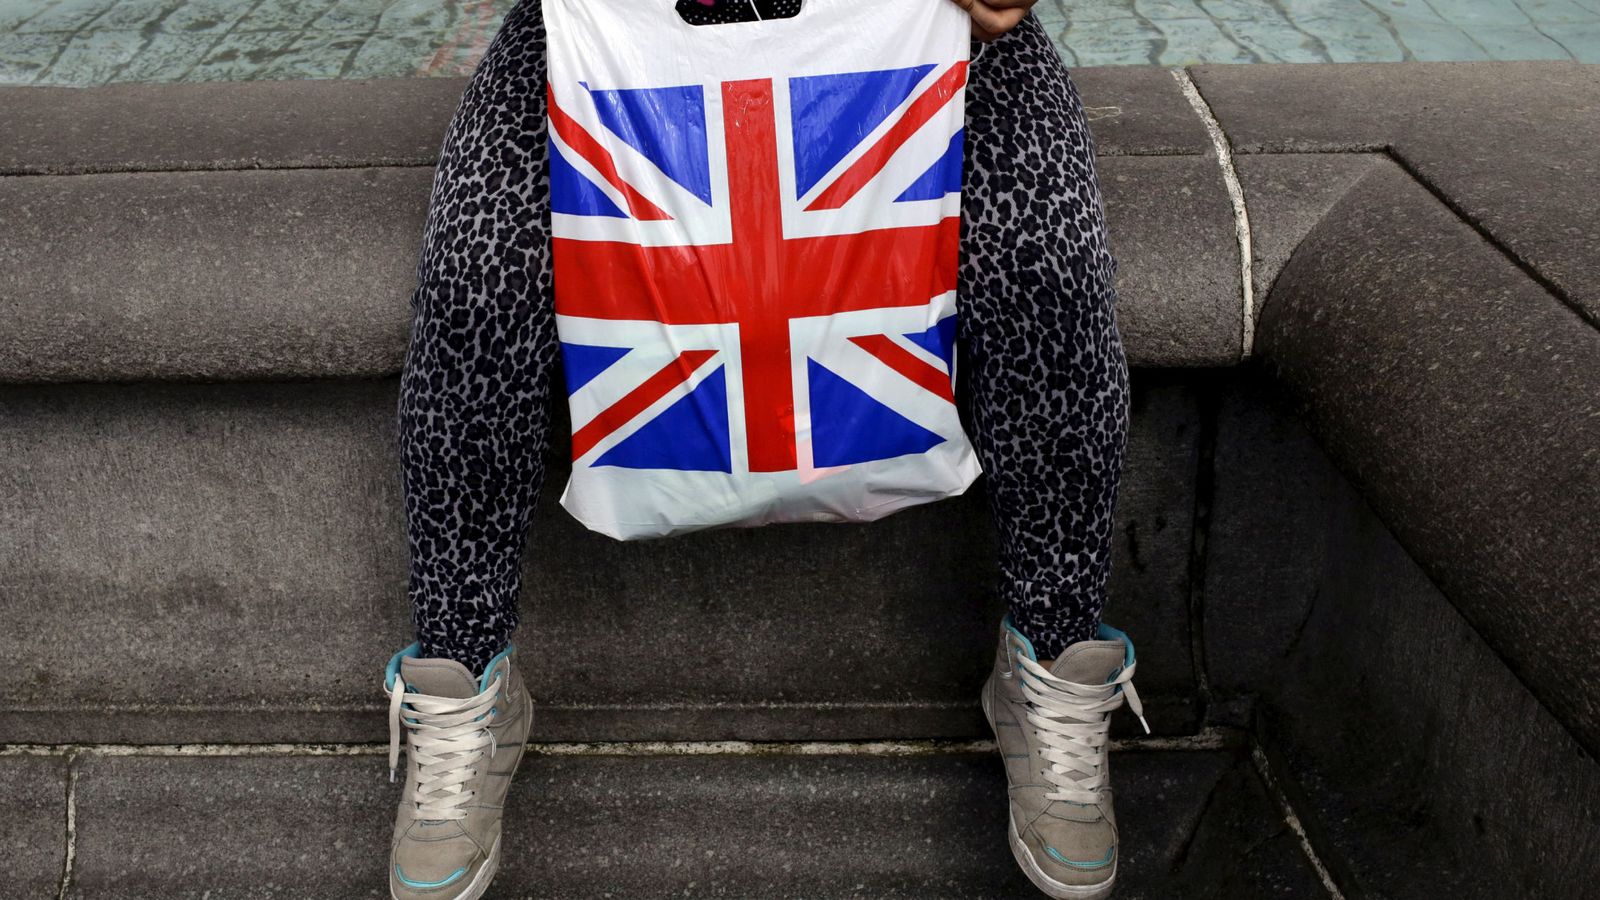 Foto: Una mujer sostiene una bolsa de plástico con la bandera británica, la Union Jack, en Londres, abril de 2016 (Reuters)